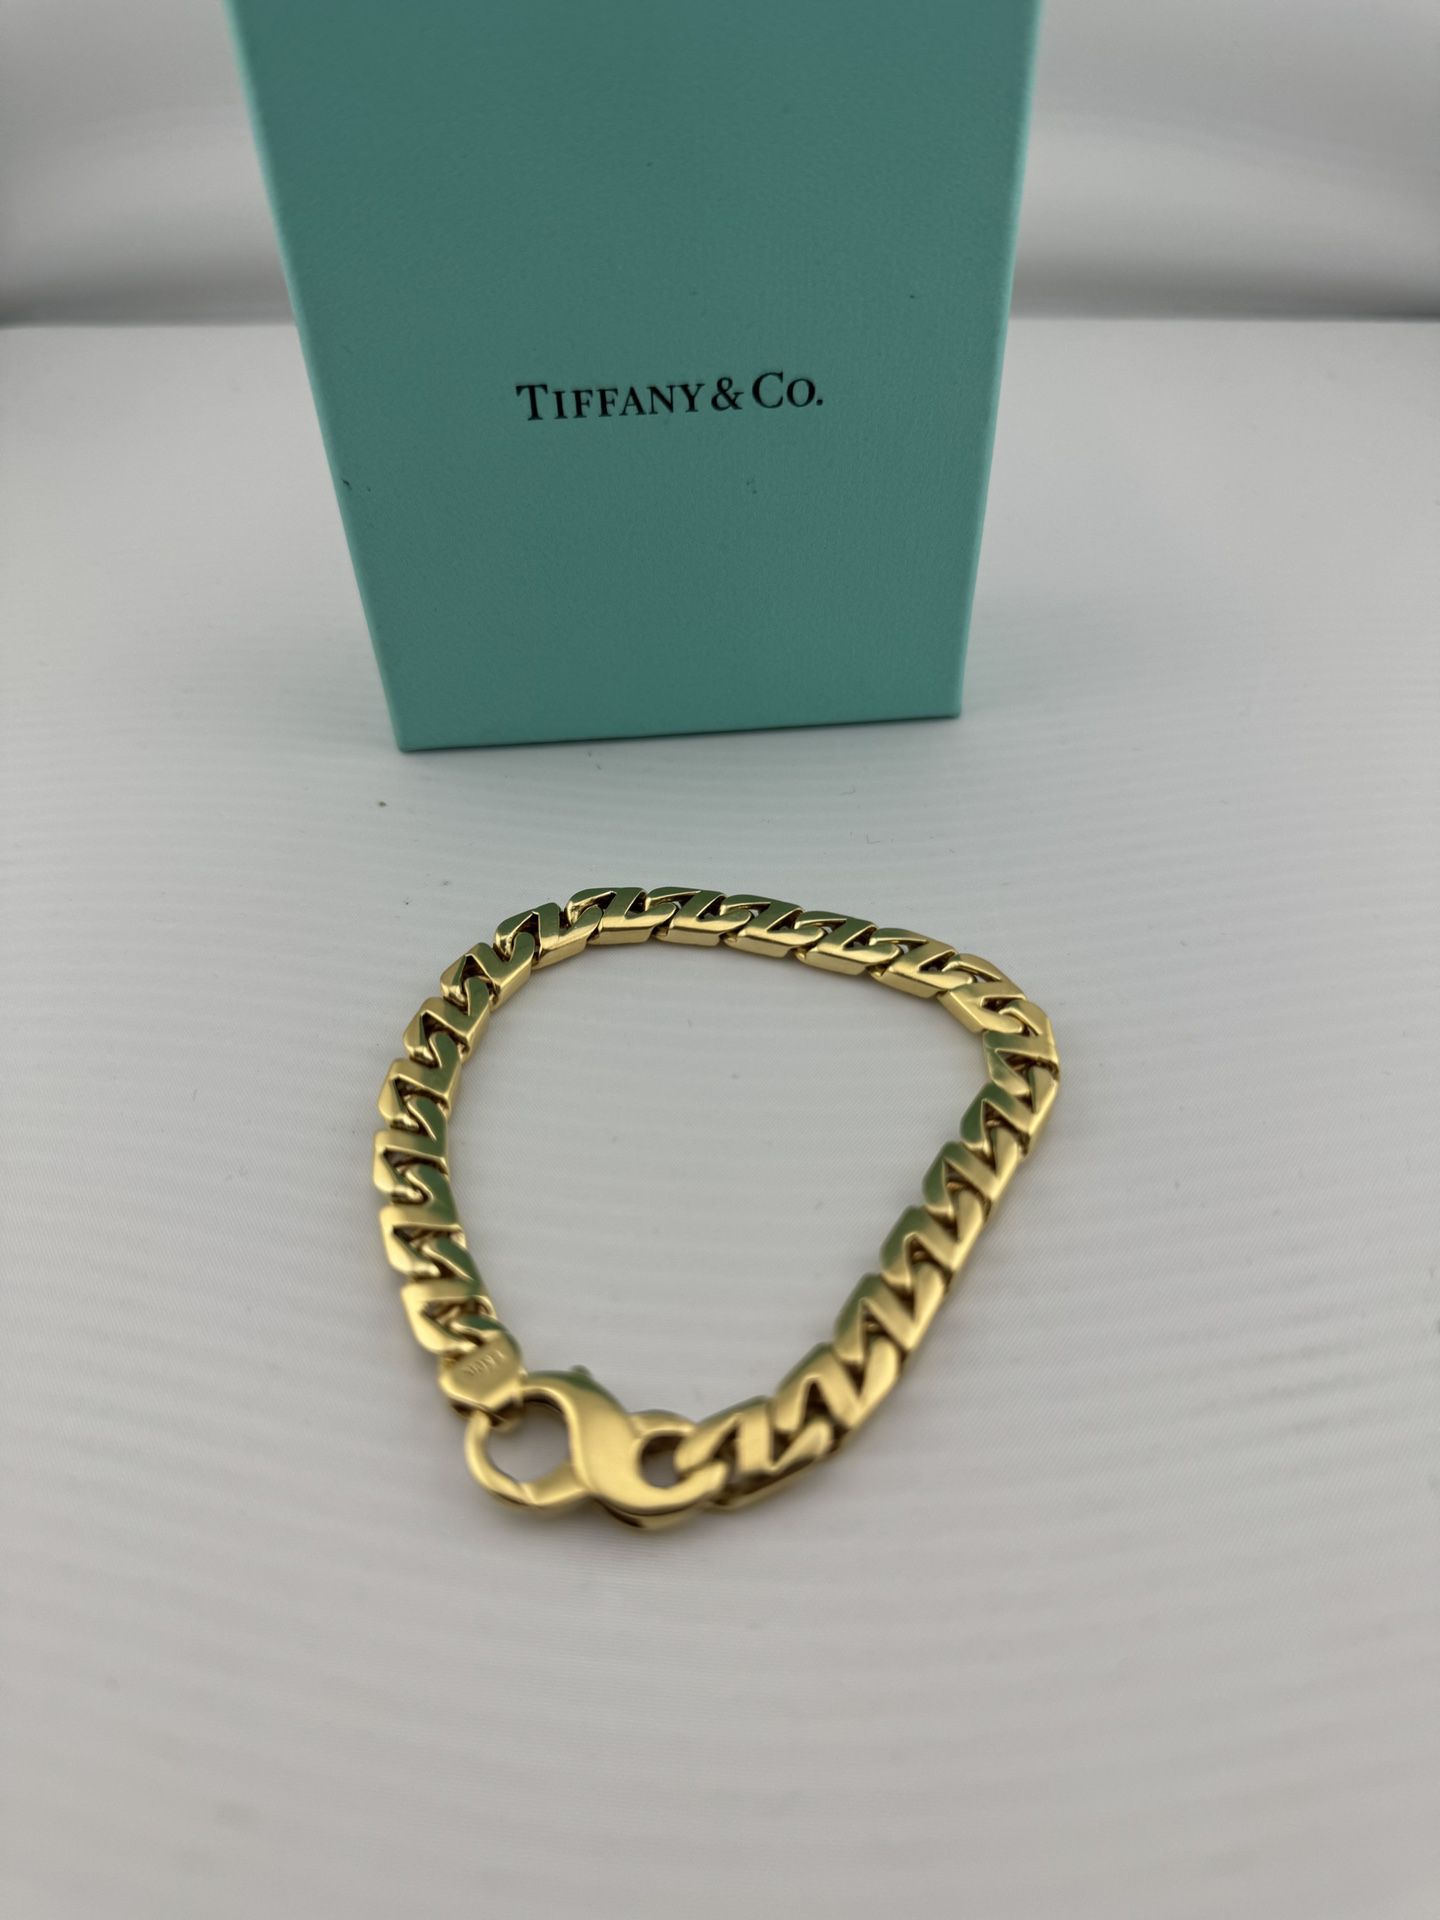 Tiffany & co 18k YG Bracelet 